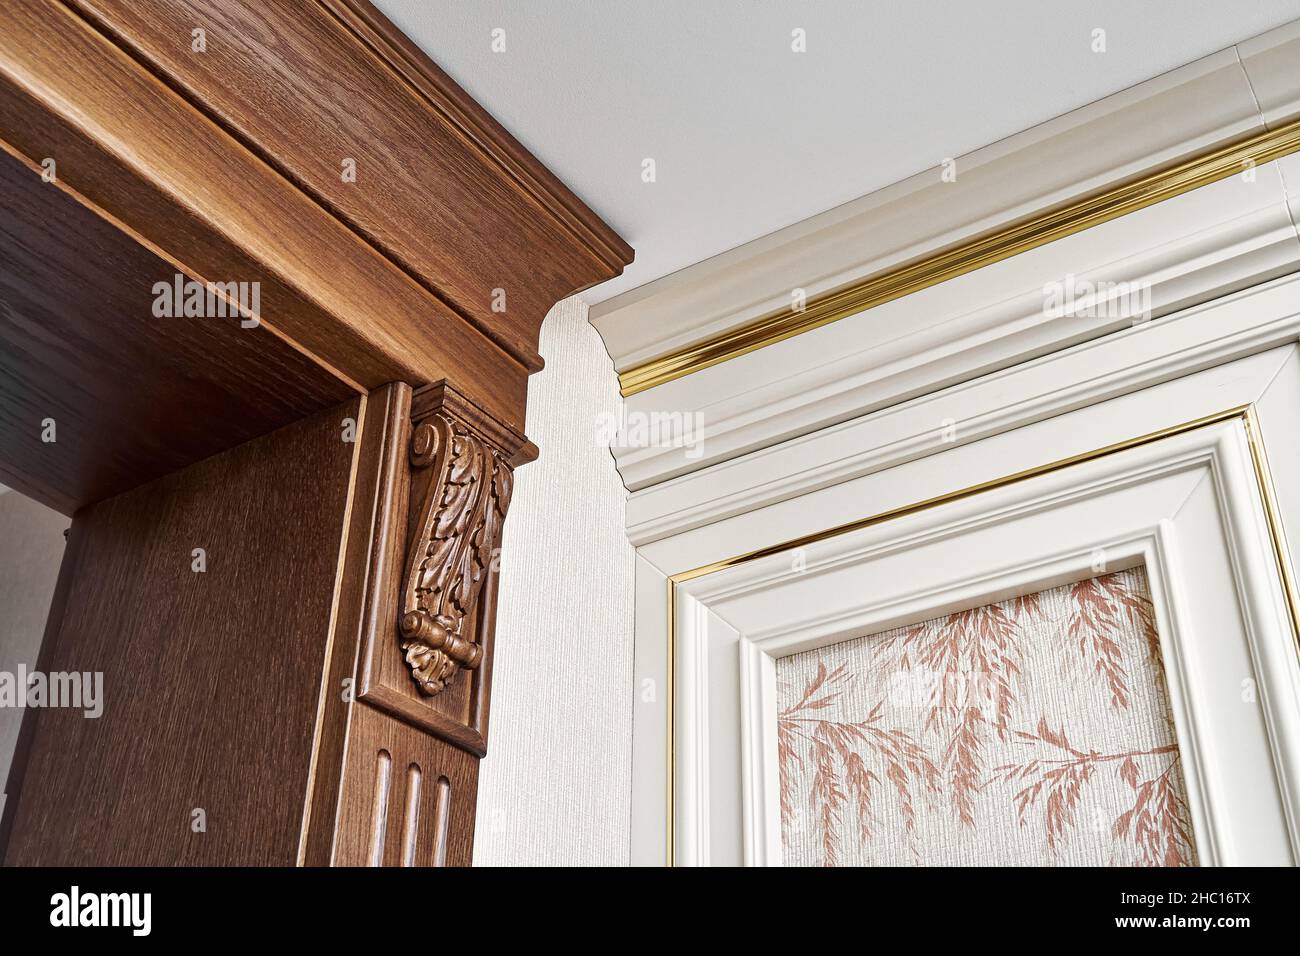 Porte en bois décorée avec supports de mobilier sculptés et panneau cannelé et panneau mural vintage avec moulures dorées dans un style classique Banque D'Images